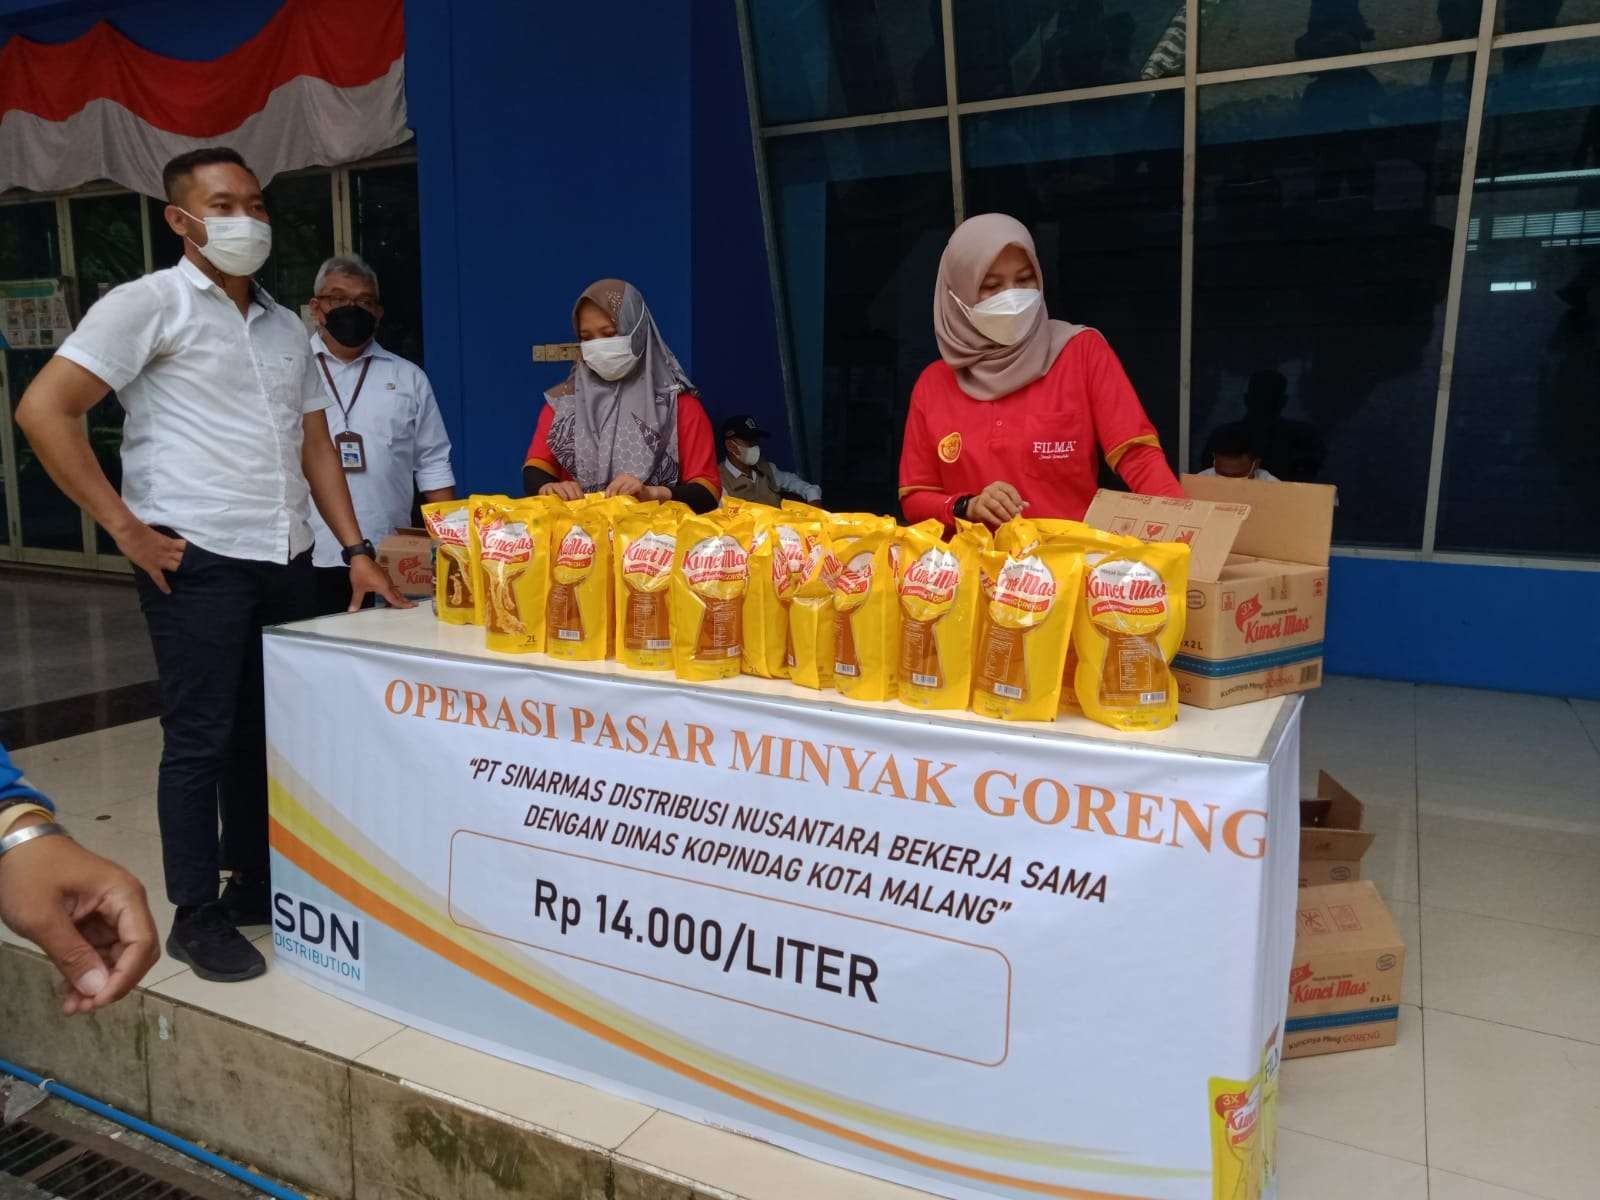 Operasi pasar minyak goreng Rp 14.000 yang digelar oleh Pemerintah Kota (Pemkot) Malang di GOR Ken Arok. (Foto: Lalu Theo/Ngopibareng.id)